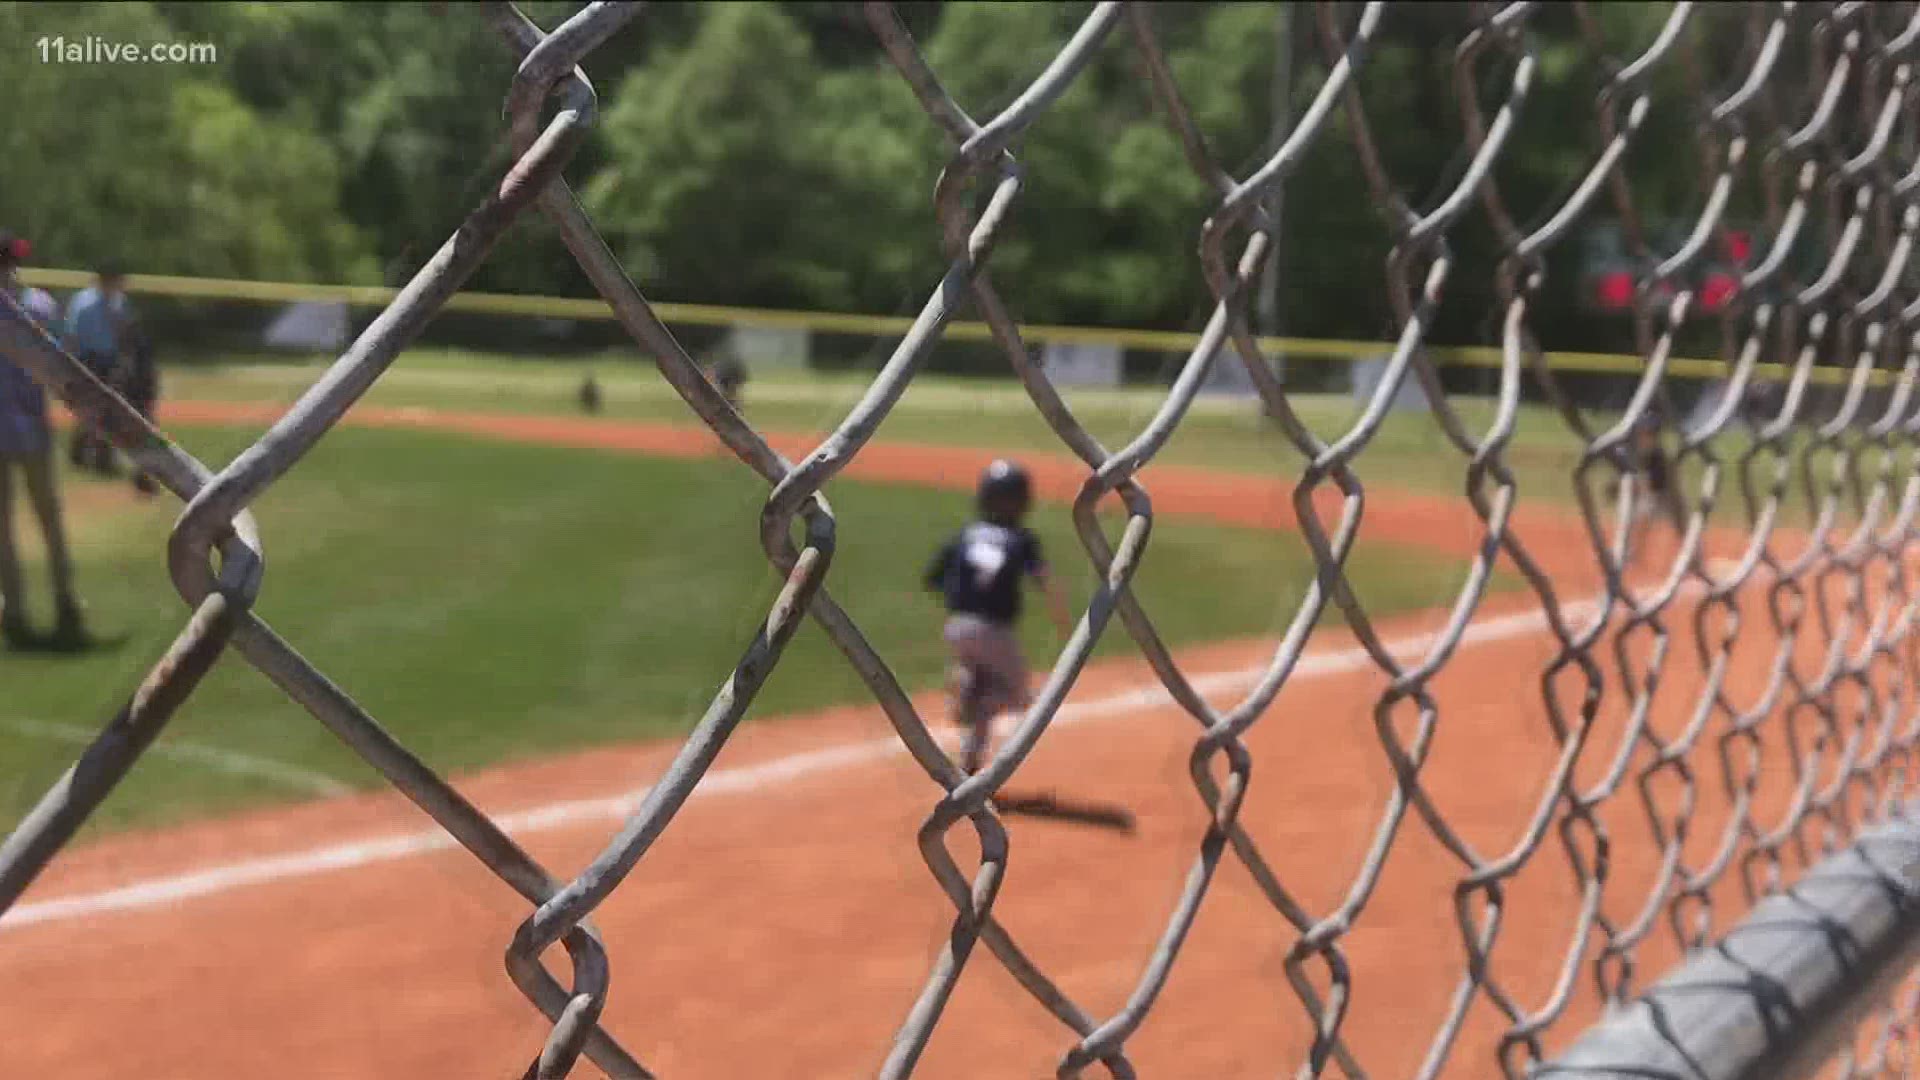 A Gwinnett County youth baseball organization is raising money by raffling an AR15 assault rifle, raising eyebrows among some Gwinnett parents.